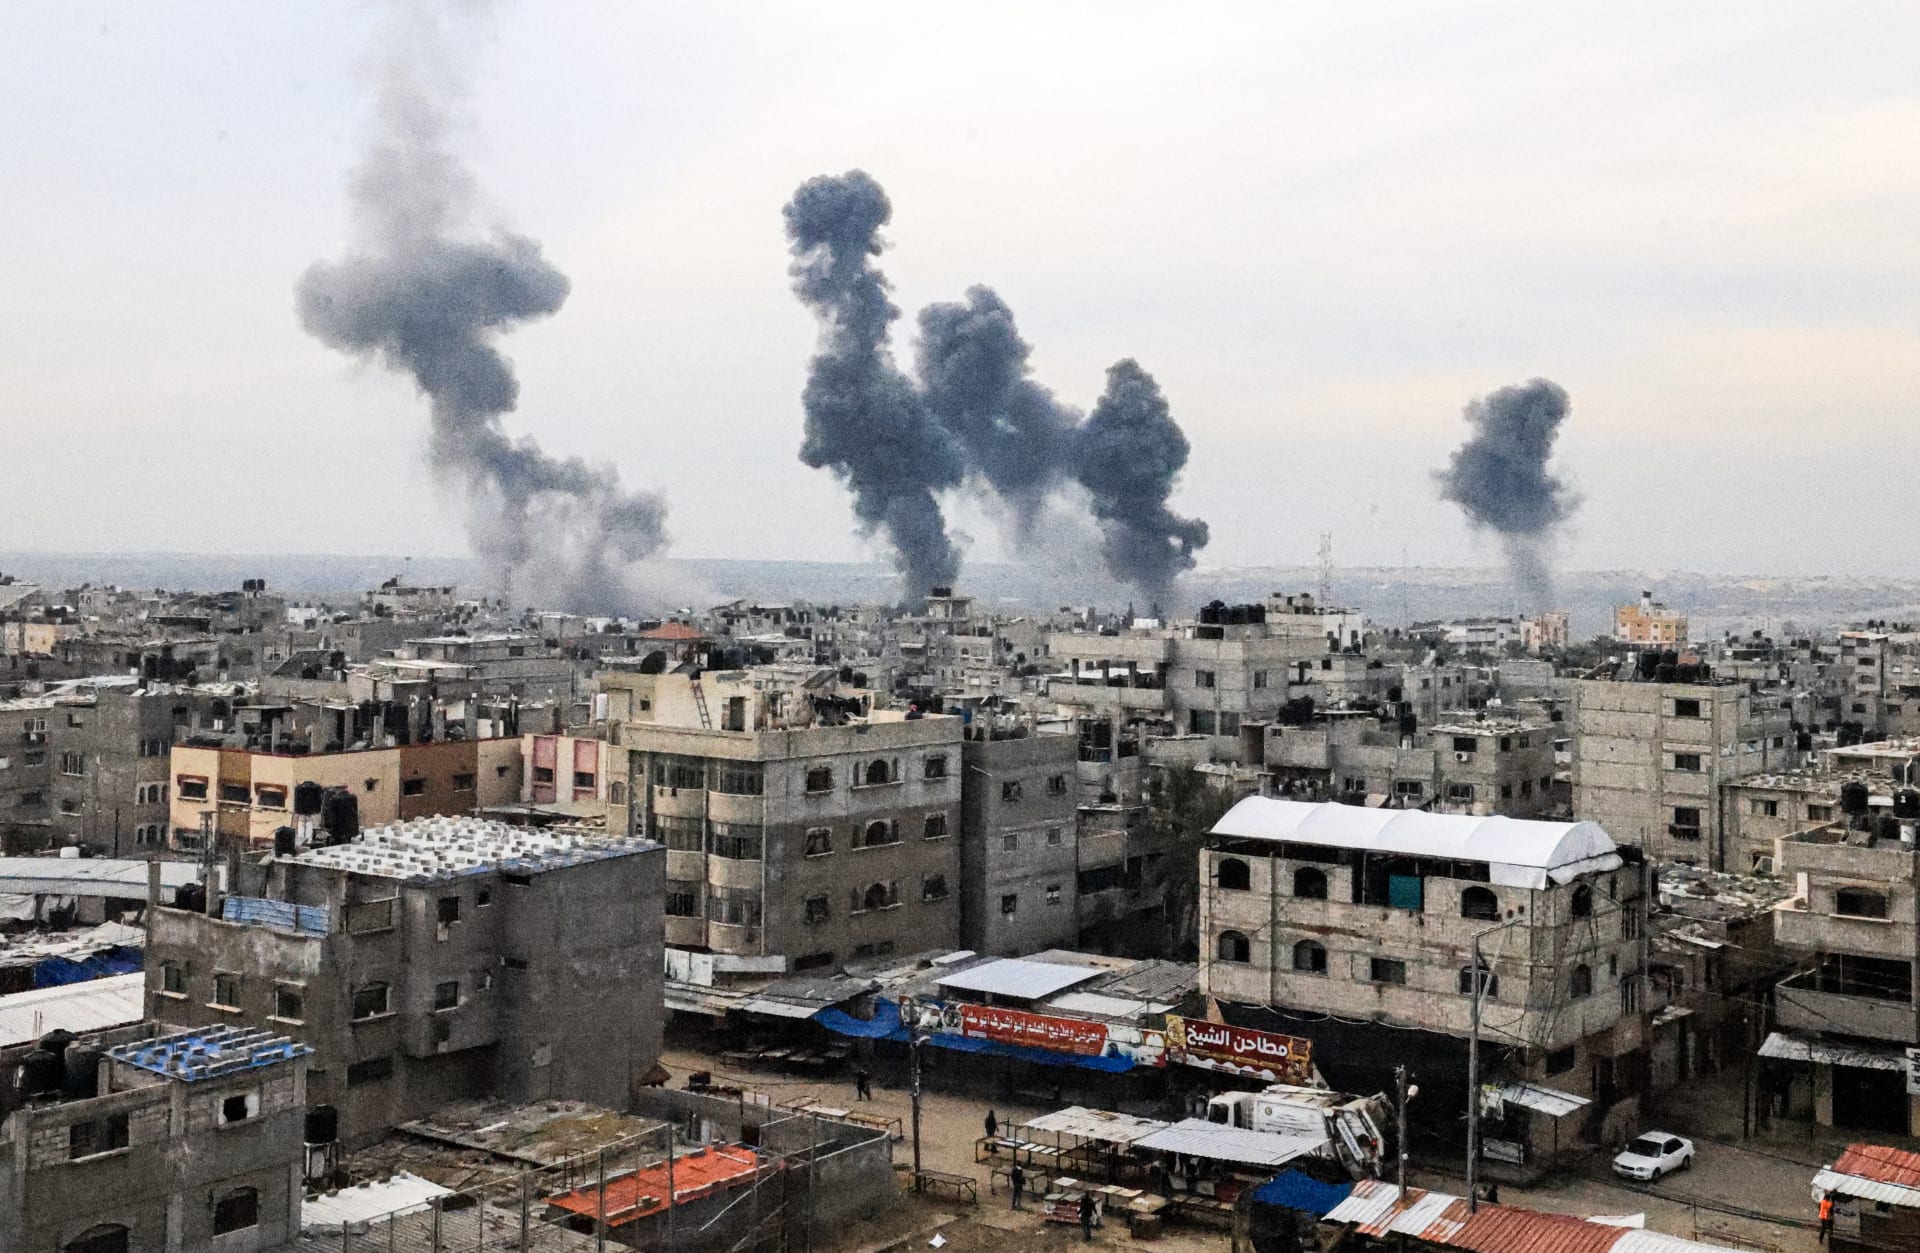 الأمم المتحدة: القتال العنيف في غزة يعيق تقديم المساعدات المنقذة لحياة الناس